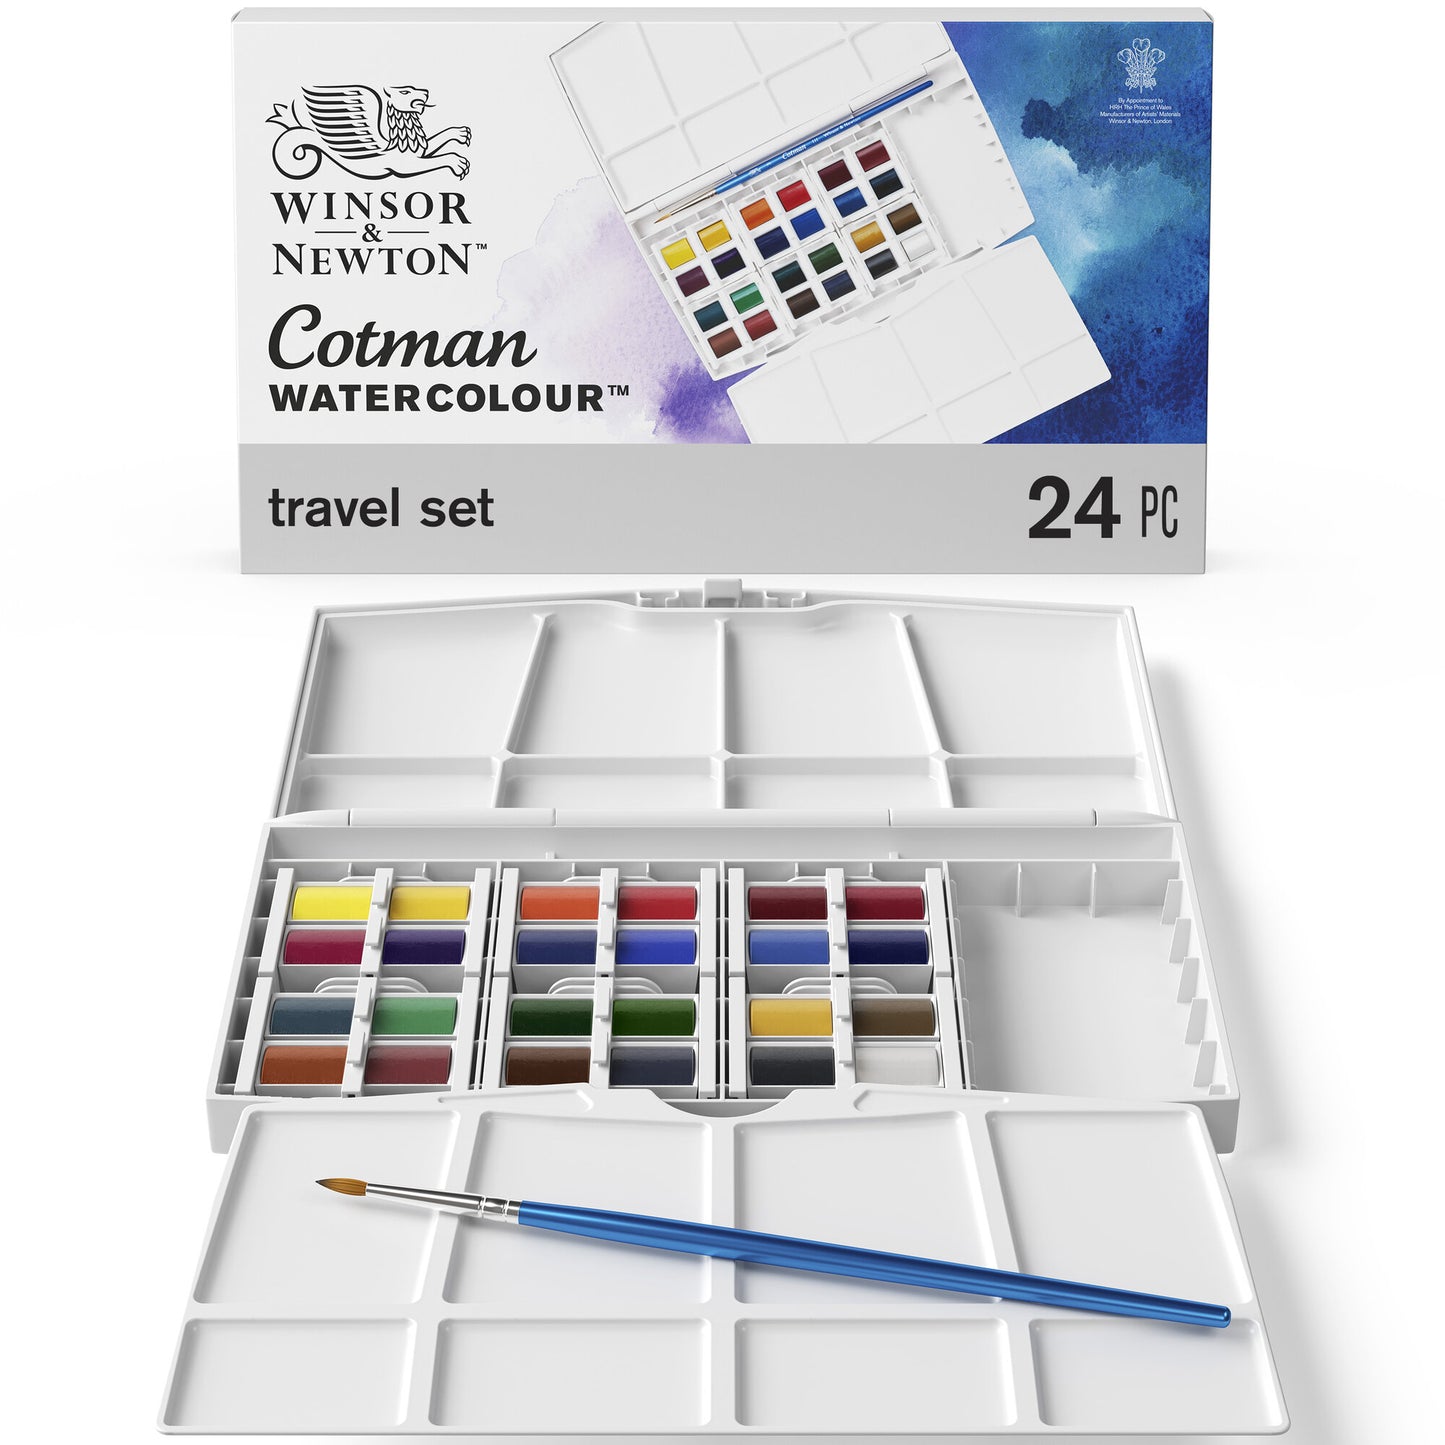 Cotman Watercolour Travel Set